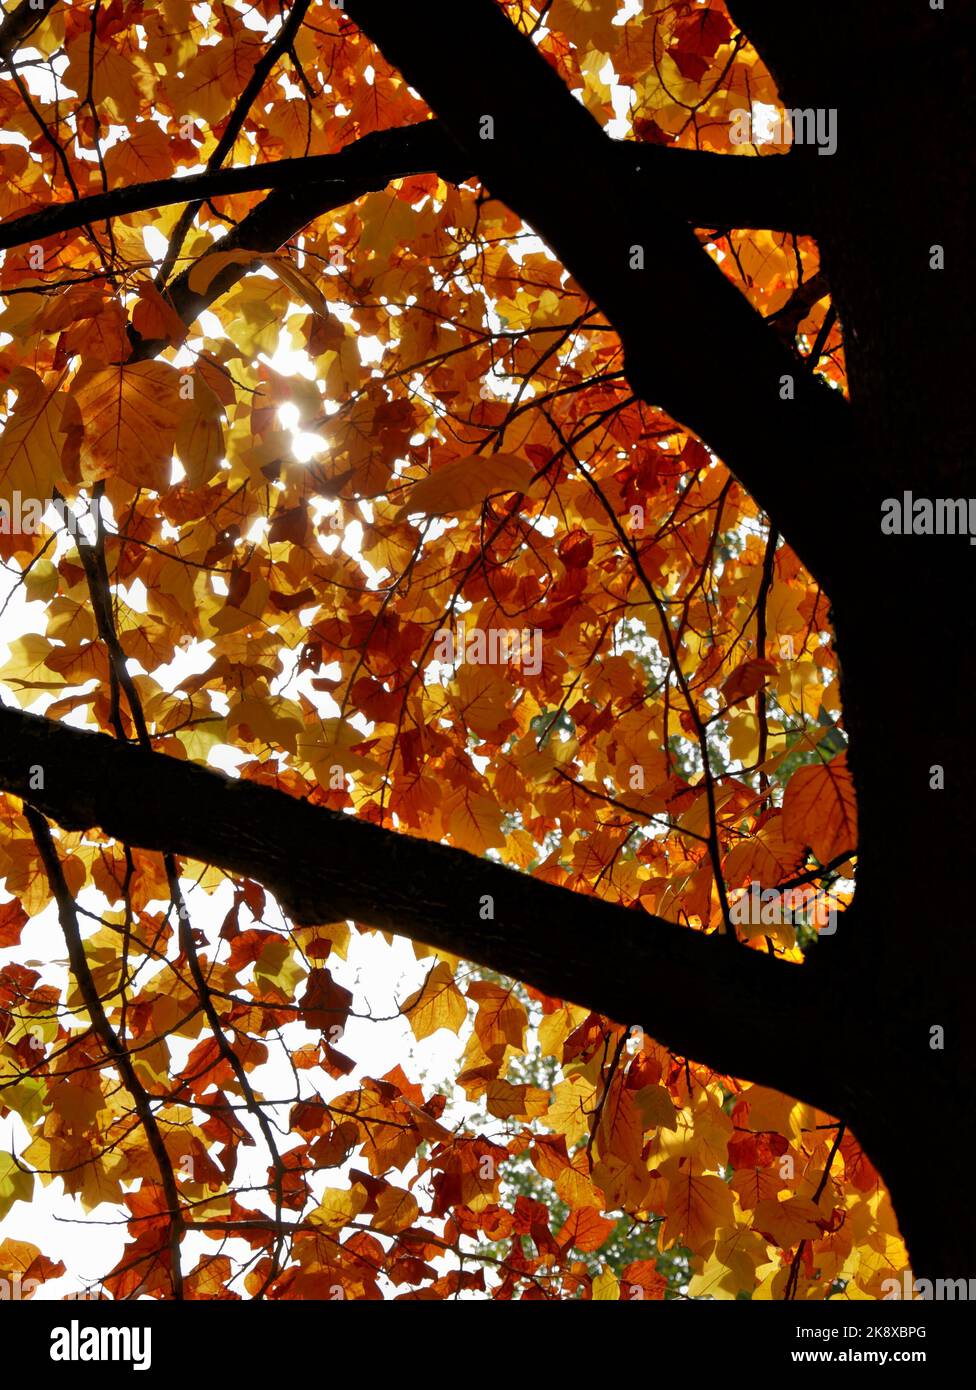 Silhouette eines Baumstammes, dessen buntes Laub vom Licht durchzogen wird Stockfoto